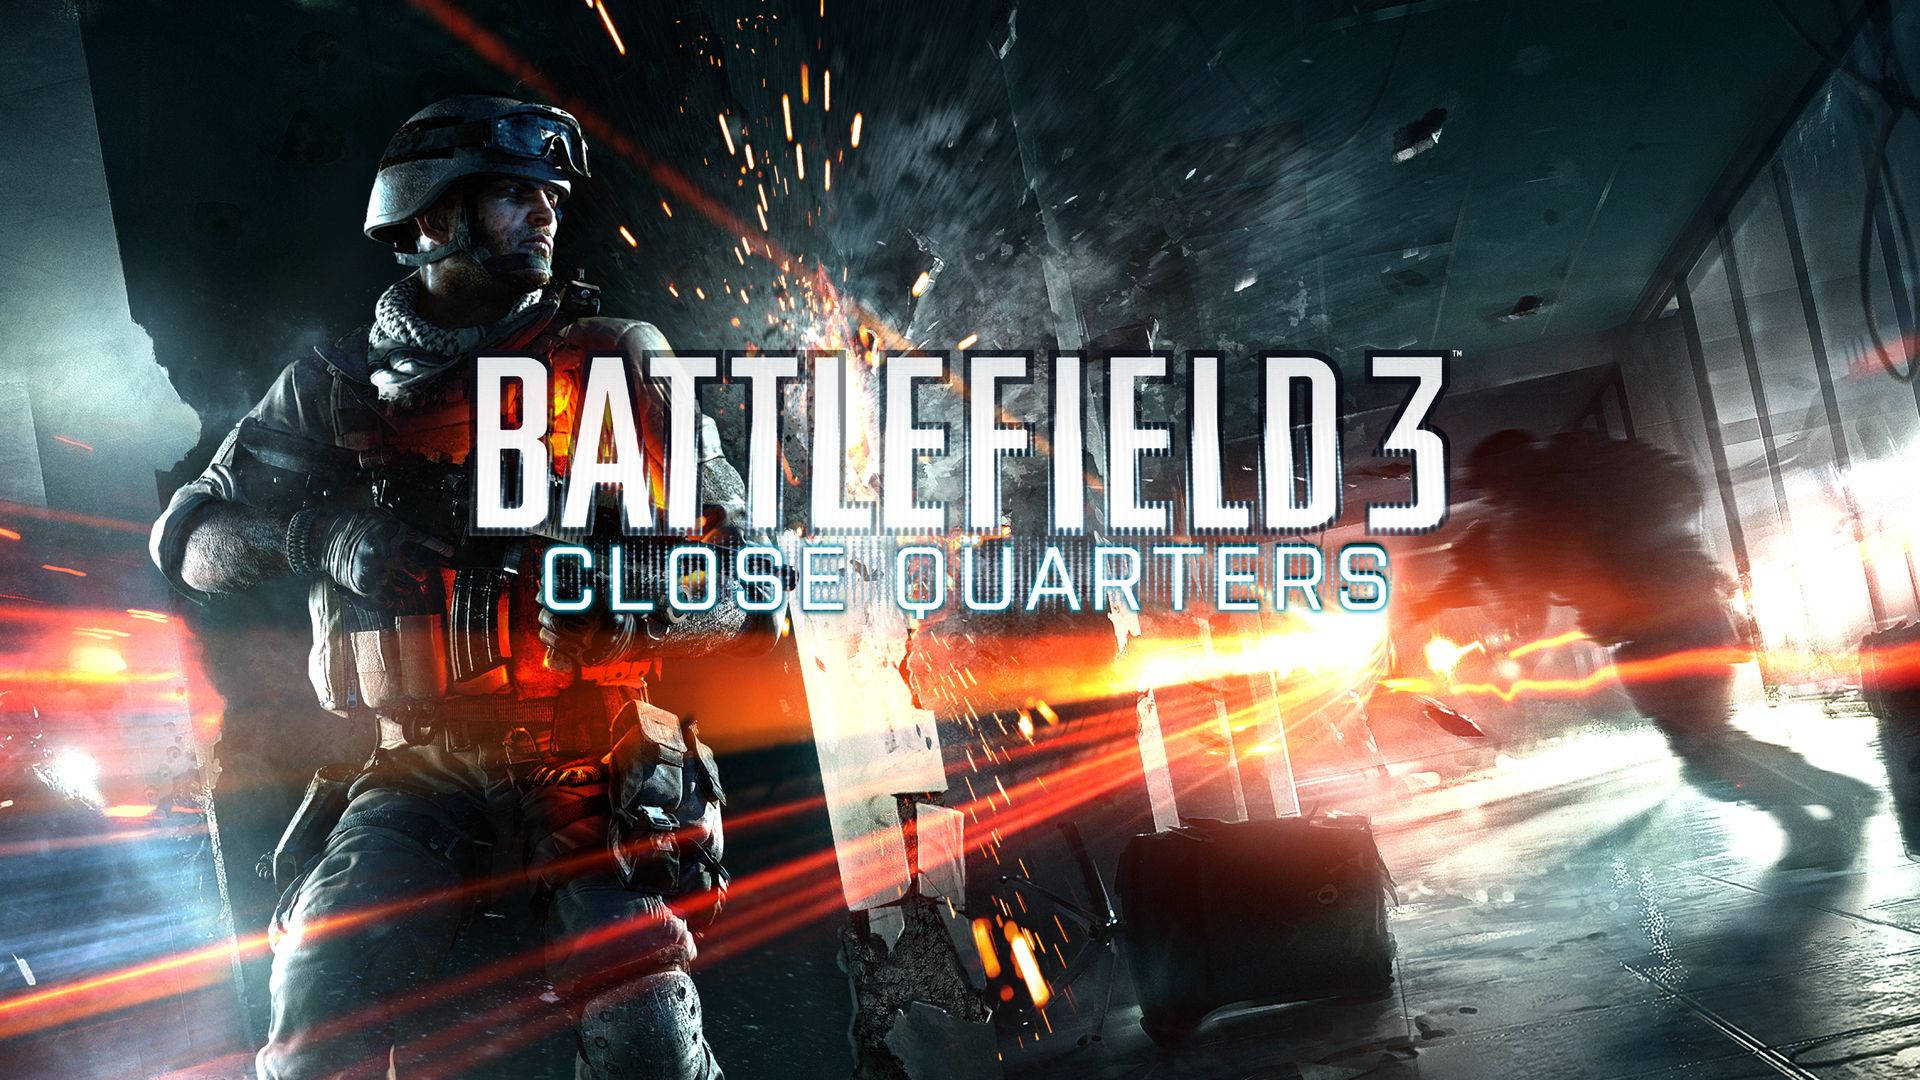 Impresionanteexpansión Del Videojuego Battlefield 3 De Combates En Espacios Cerrados. Fondo de pantalla